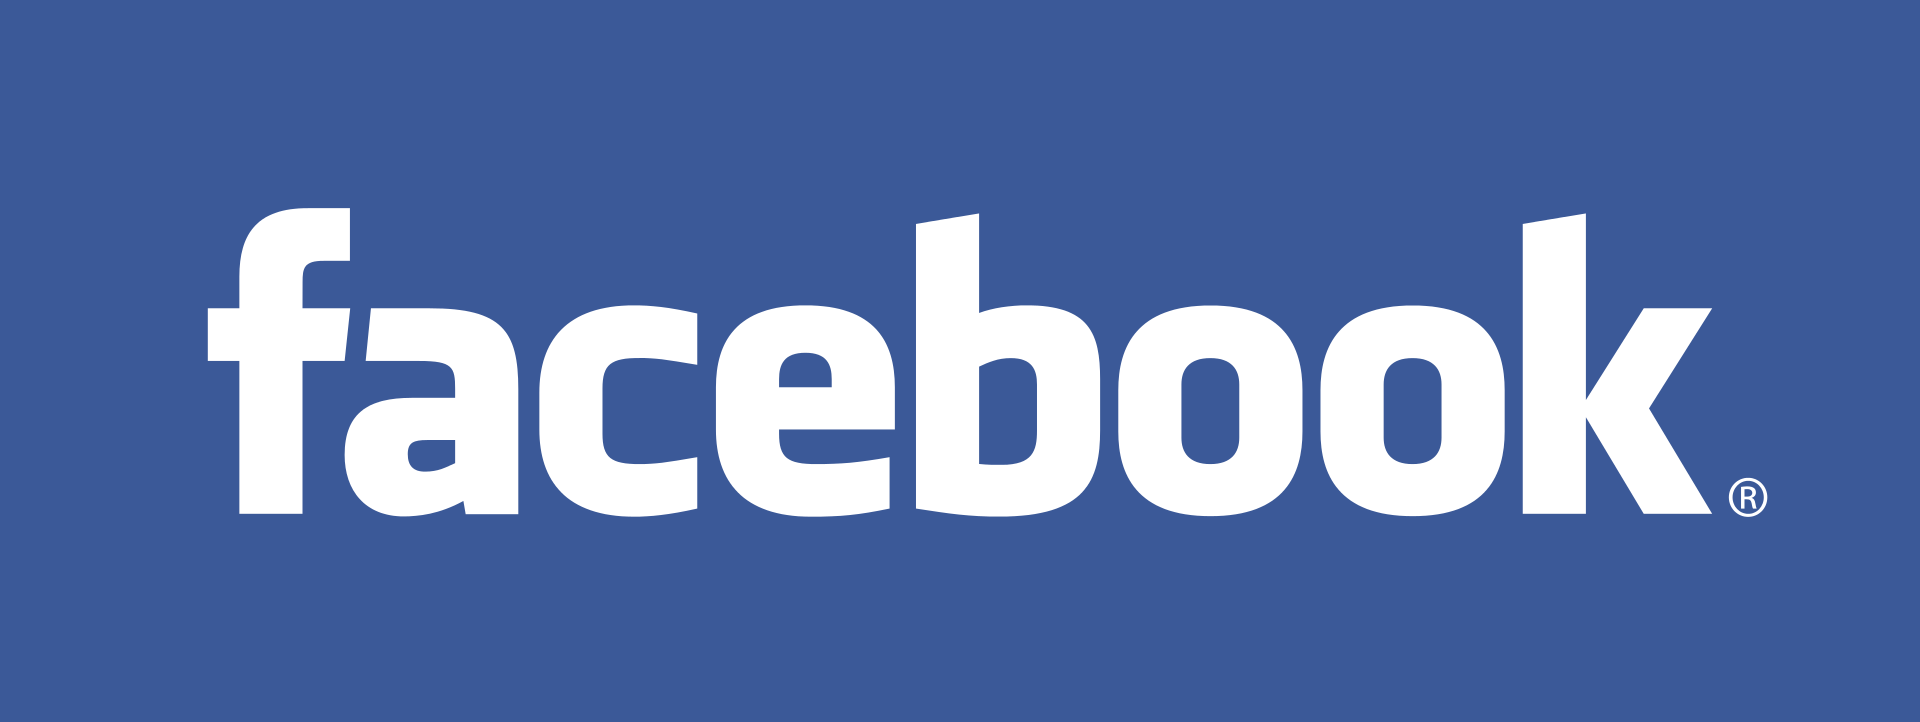 Facebook’s previous logo